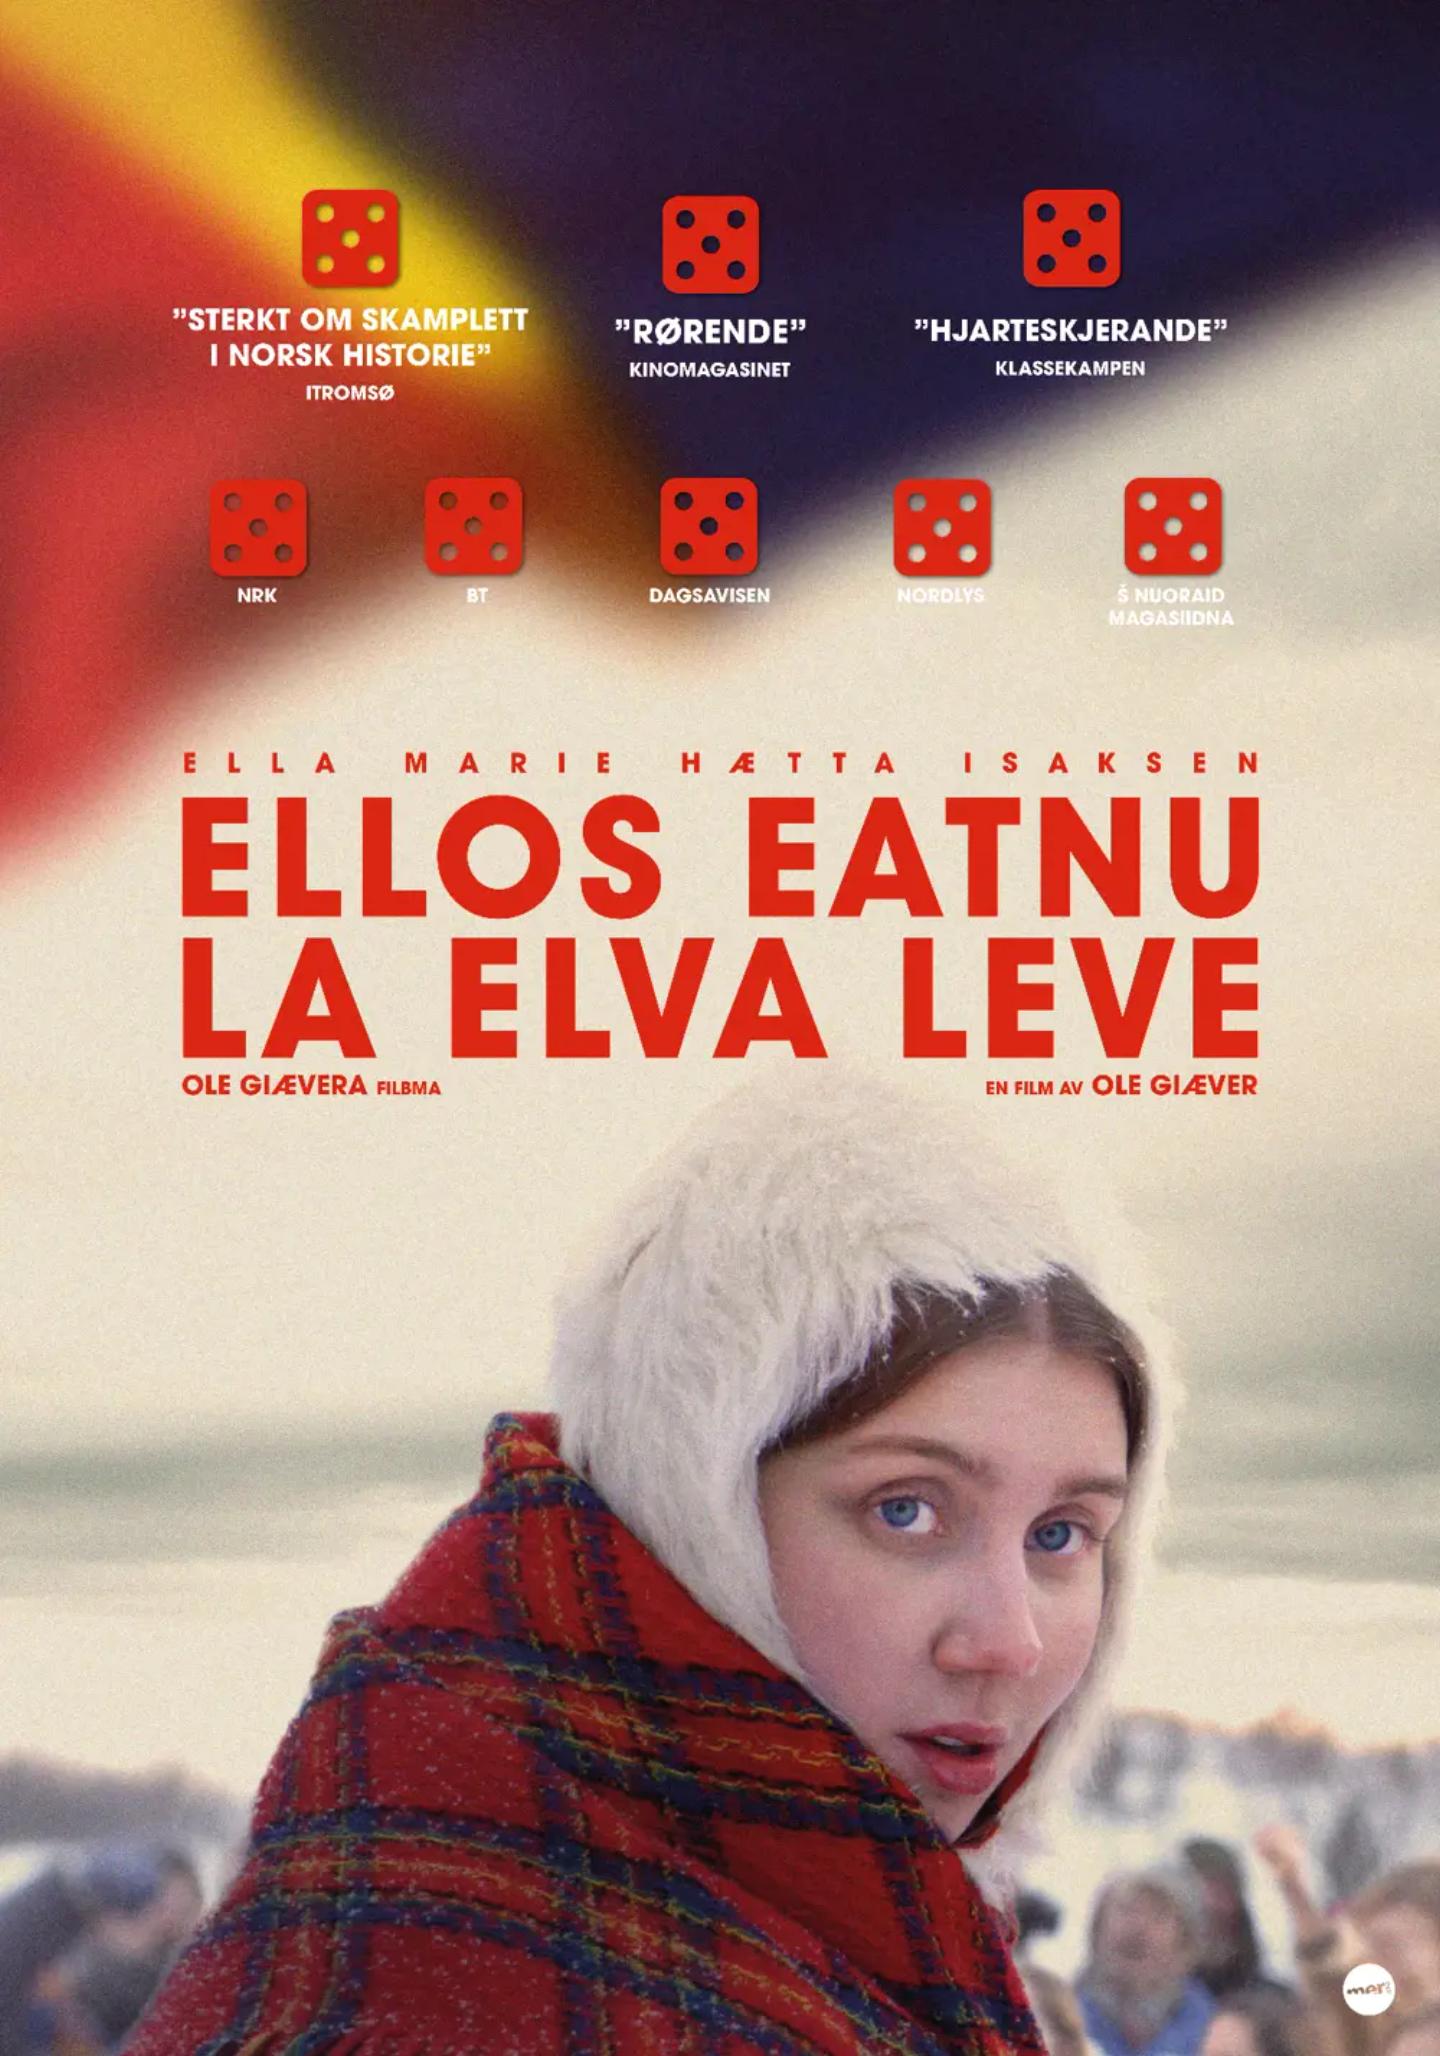 Plakat for 'Ellos eatnu - La elva leve '